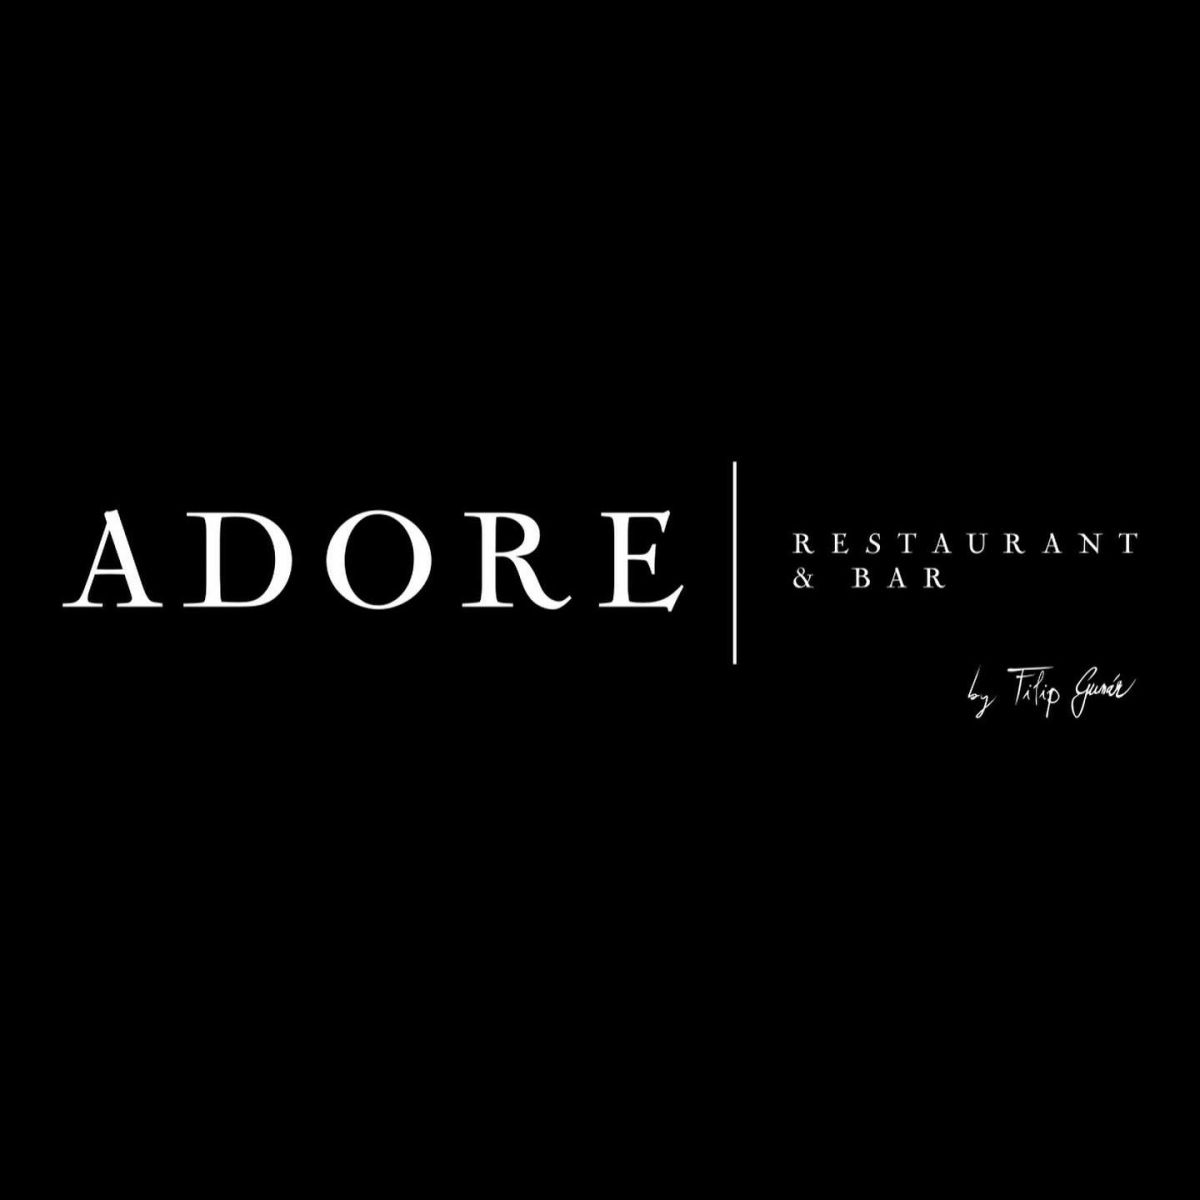 Adore restaurant